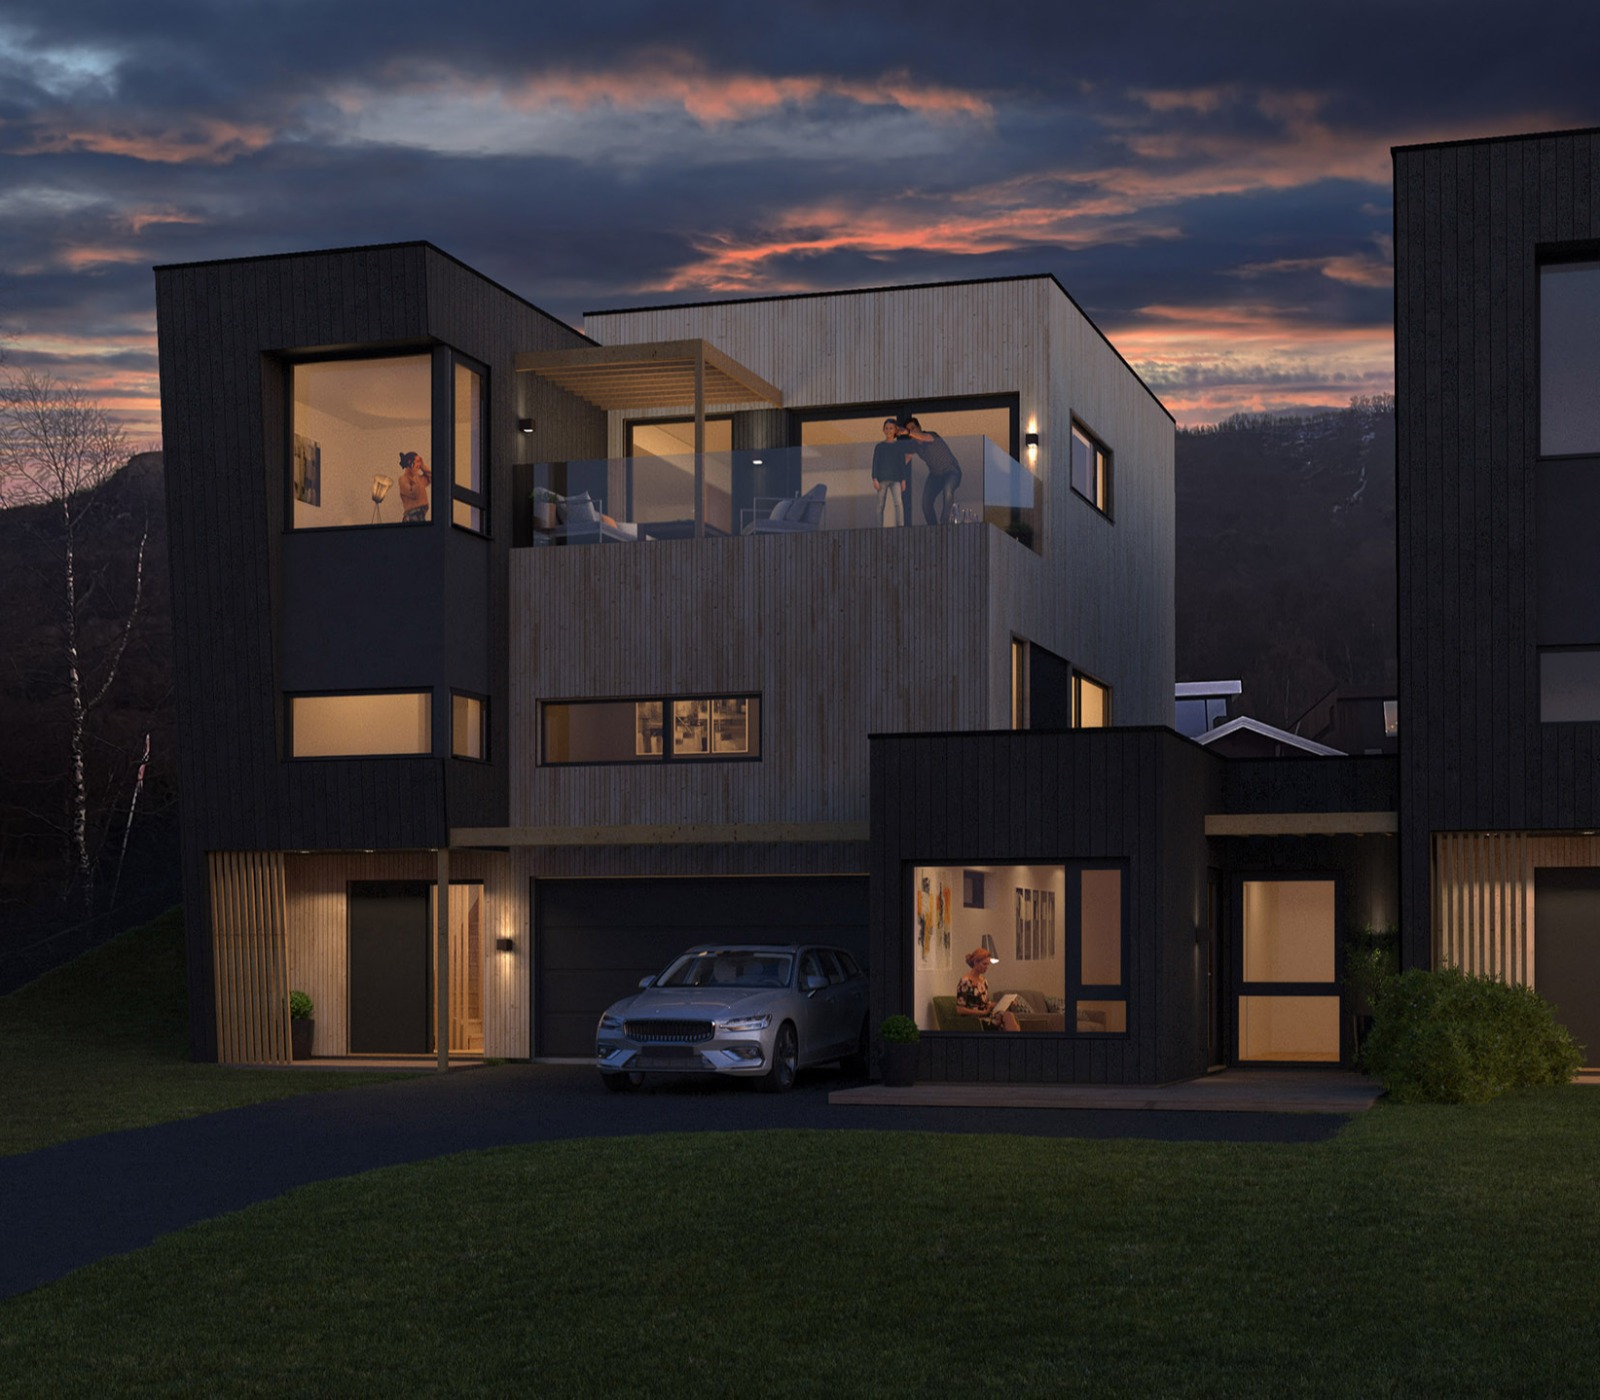 Arkitekttegnede boliger med utleiedel og høy standard i Fløylia